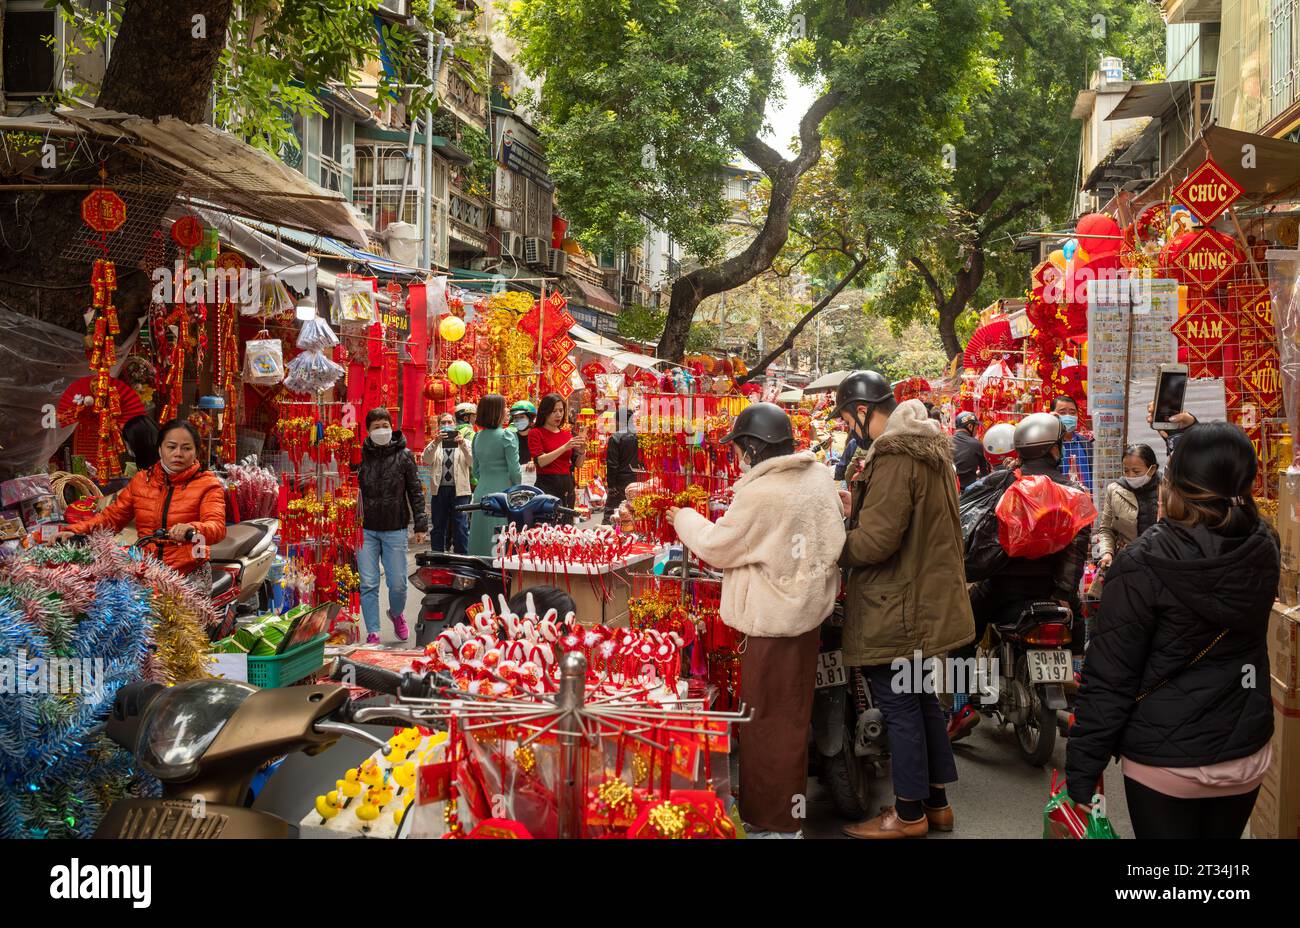 Les Vietnamiens parcourent des stands vendant des cadeaux rouges et dorés colorés pour le Têt, ou nouvel an lunaire, dans une rue bondée de Hang Ma, Hanoi, Vietnam. Banque D'Images